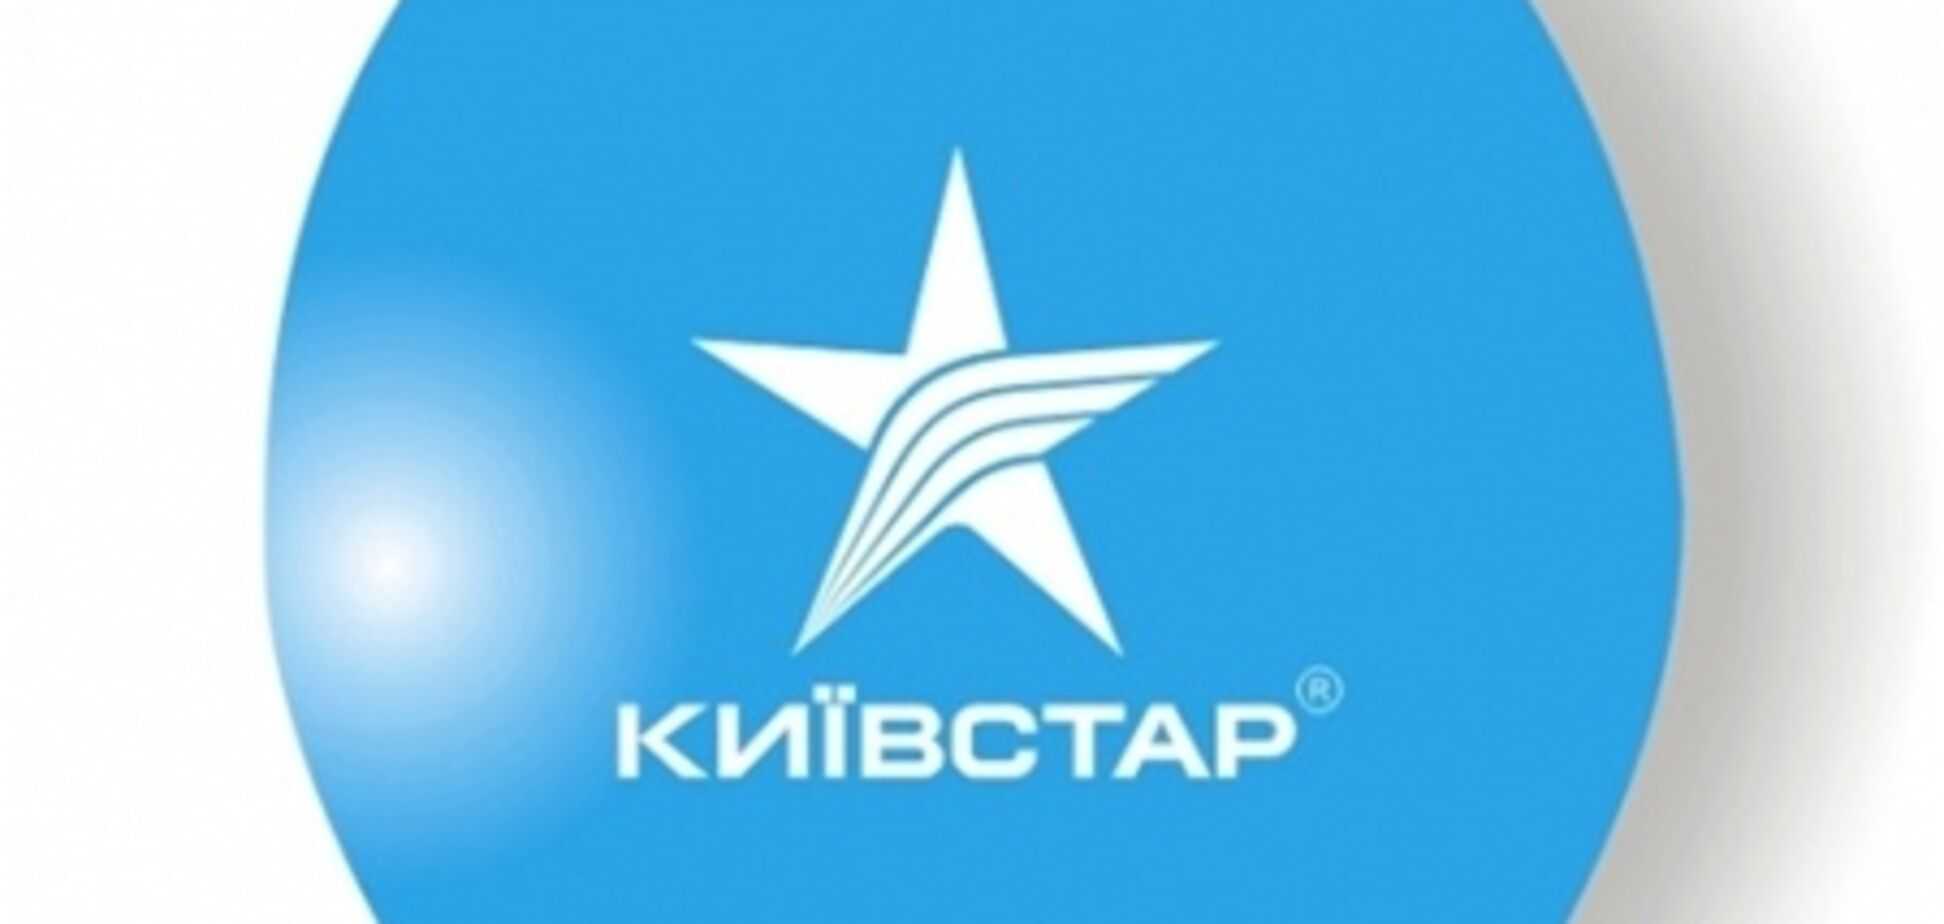 Kyivstar aero, кyivstar terra и kyivstar aqua — брендированные телефоны от киевстар